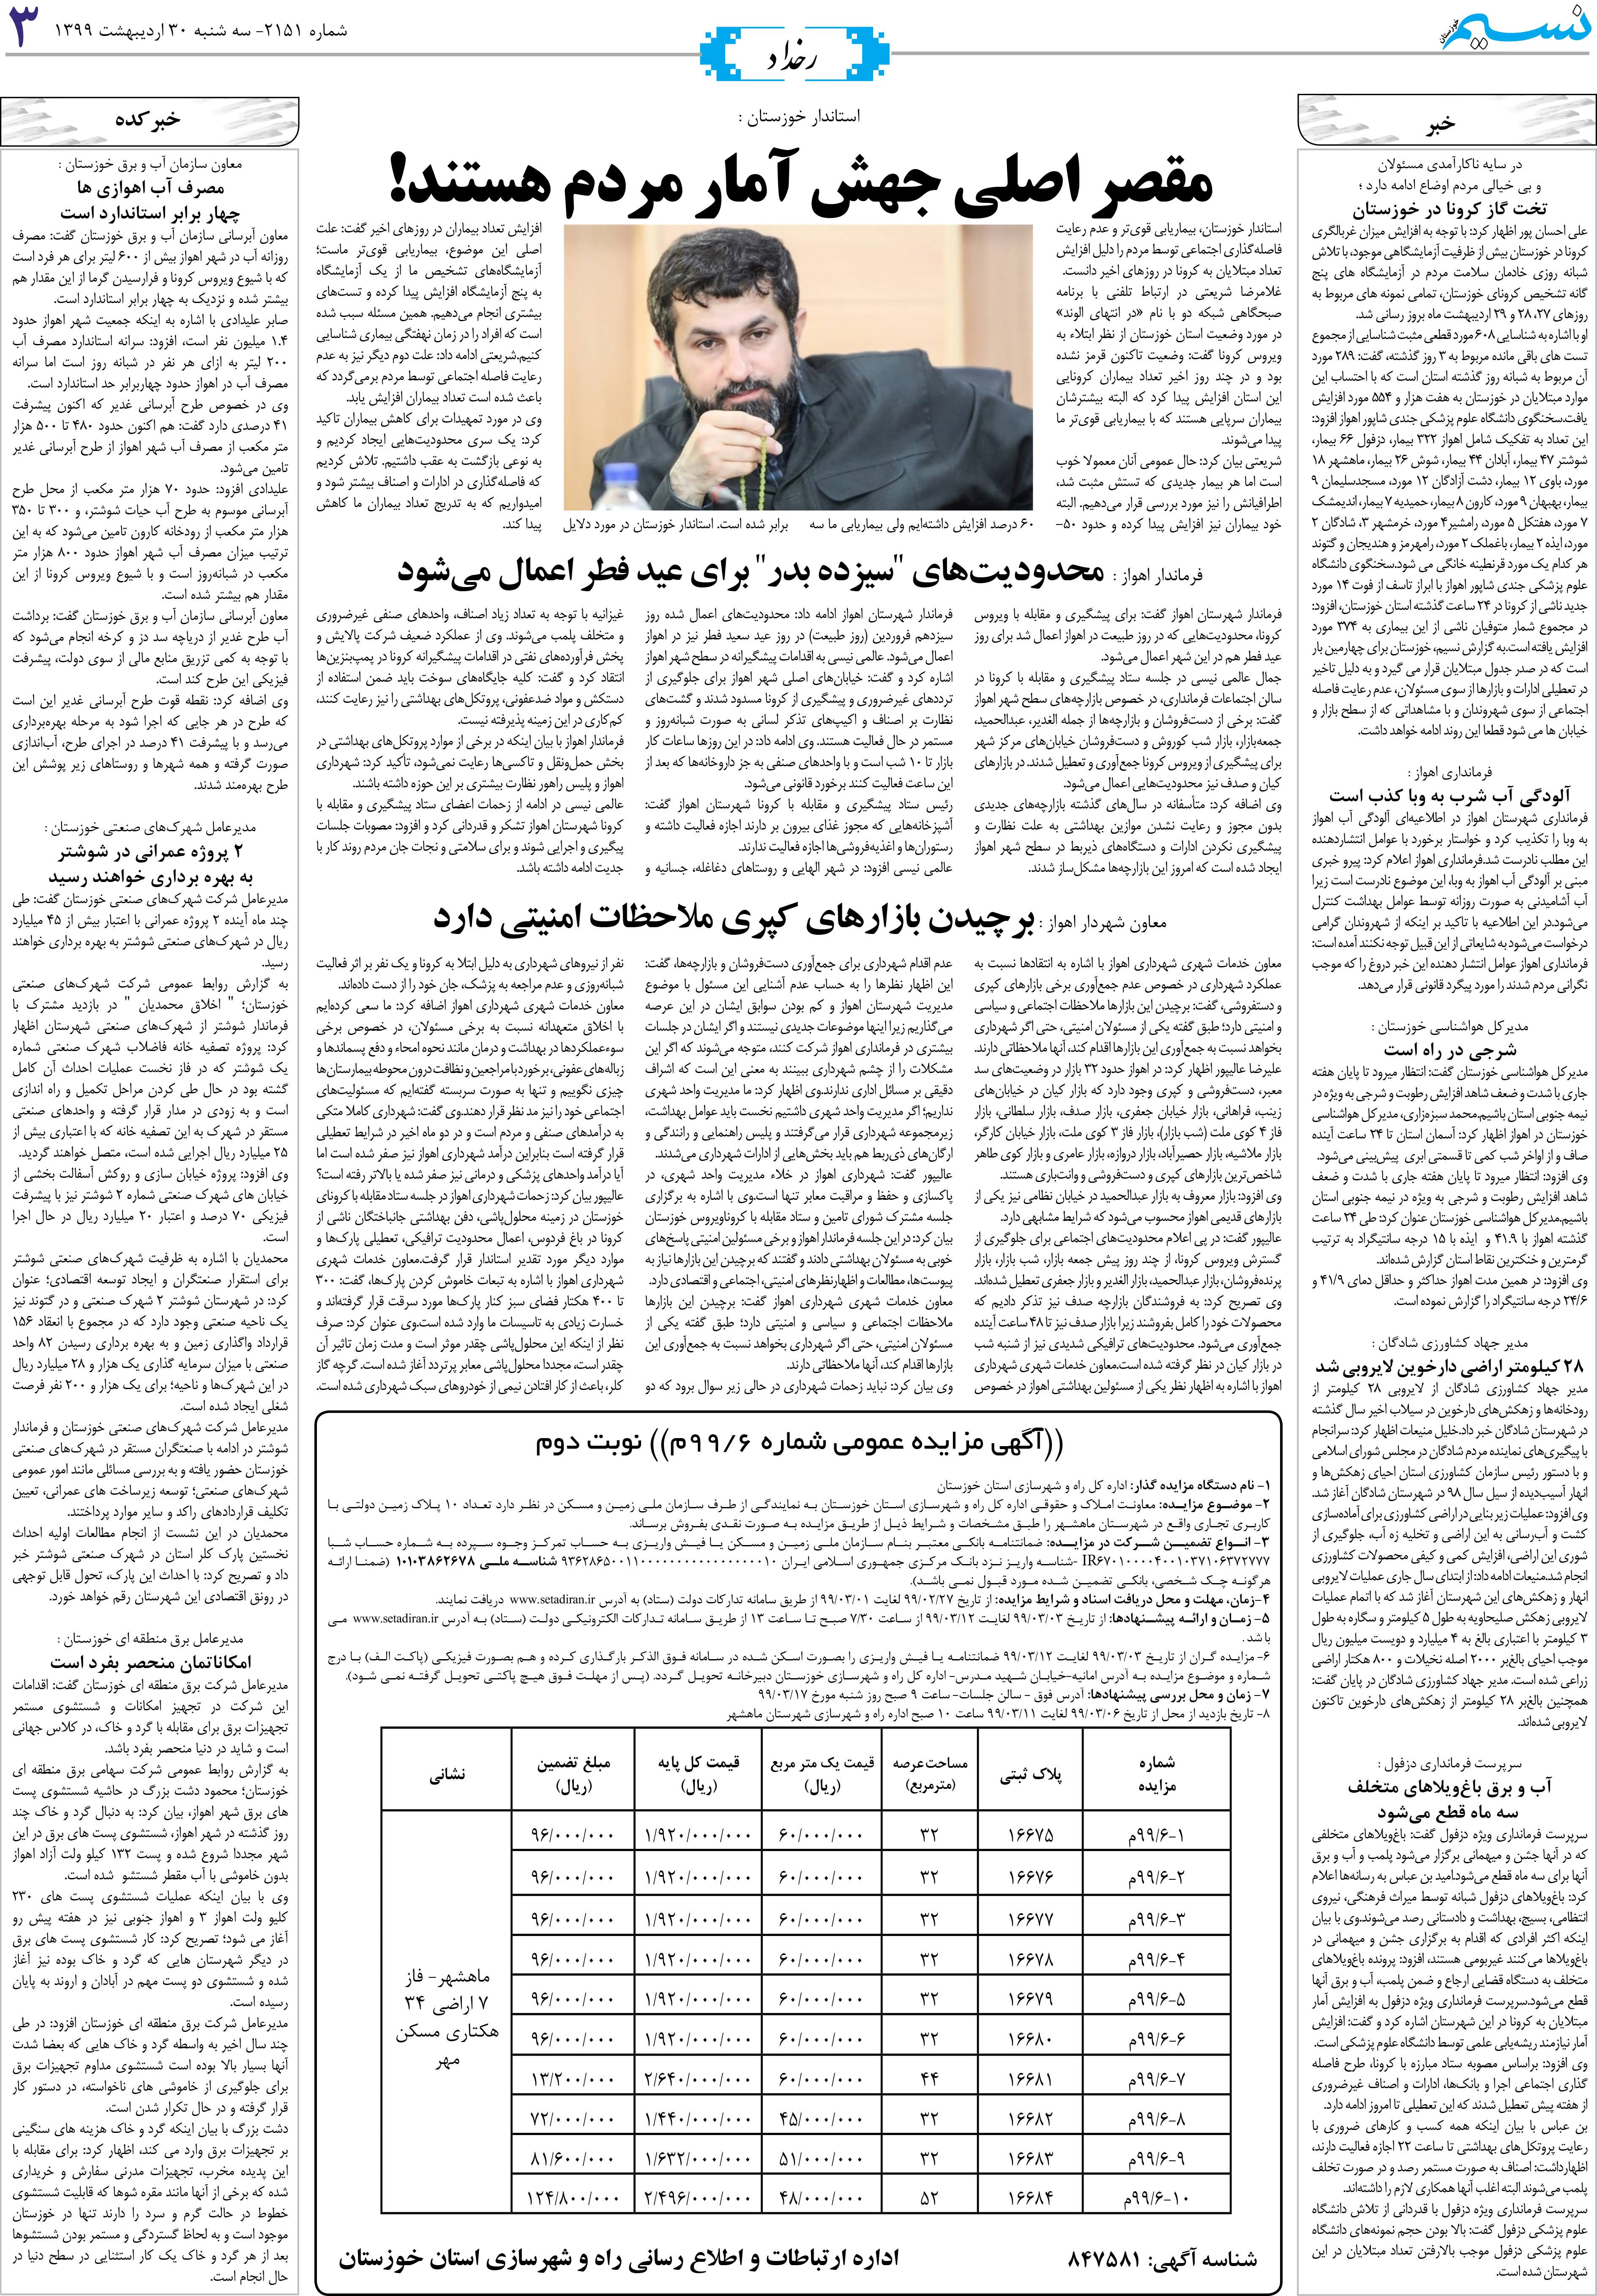 صفحه رخداد روزنامه نسیم شماره 2151